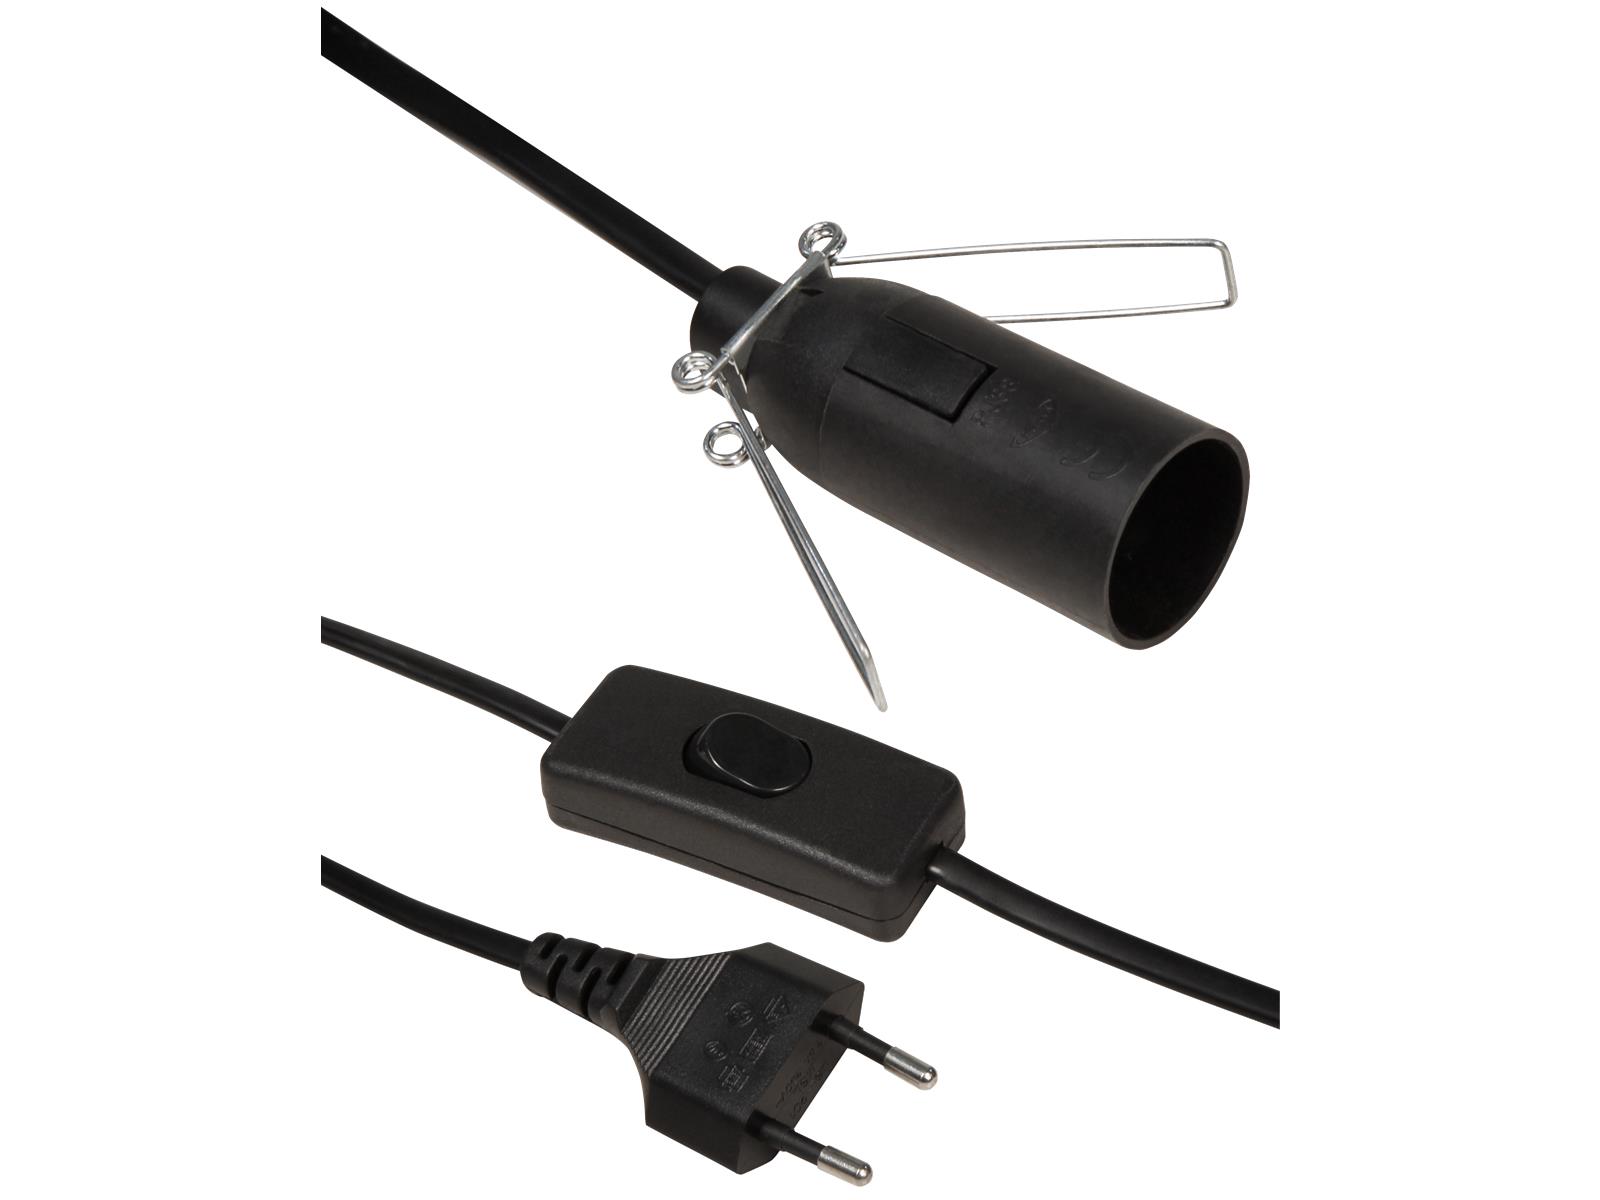 Euro-Netzkabel McPower mit Schnurschalter und E14 Fassung, 3,5m, schwarz